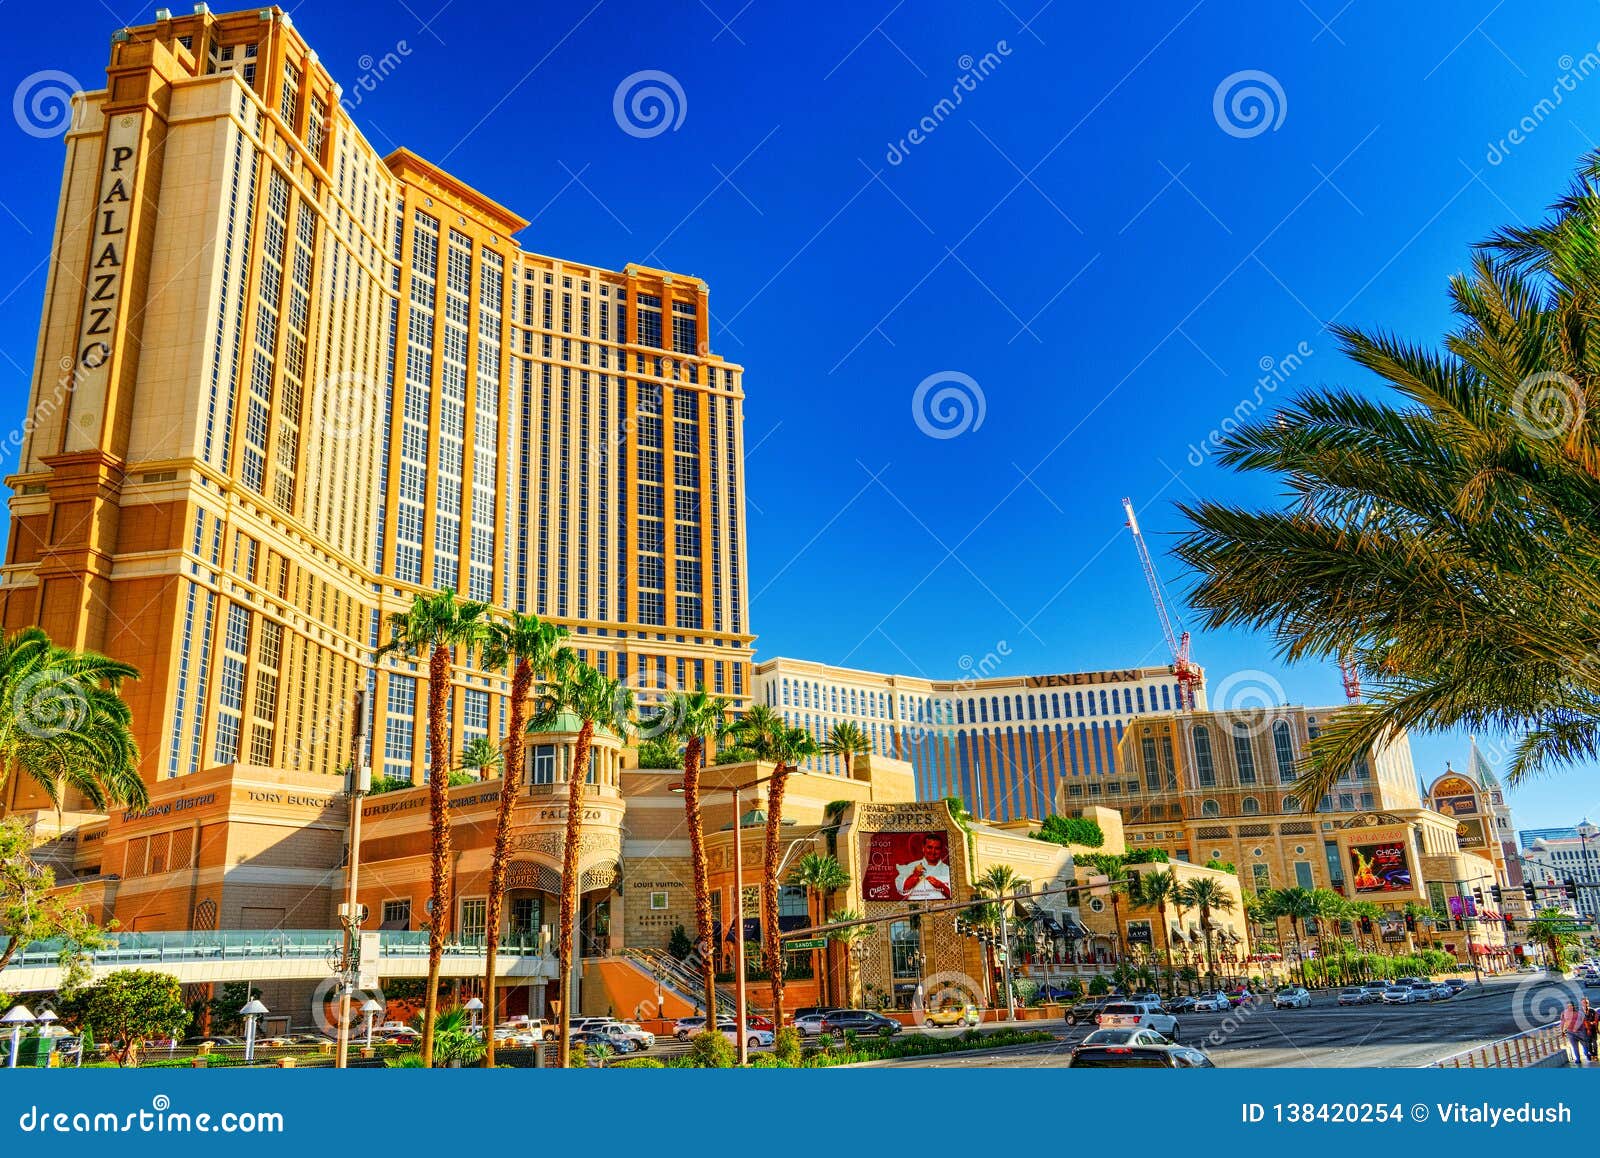 Las Vegas Strip Casino